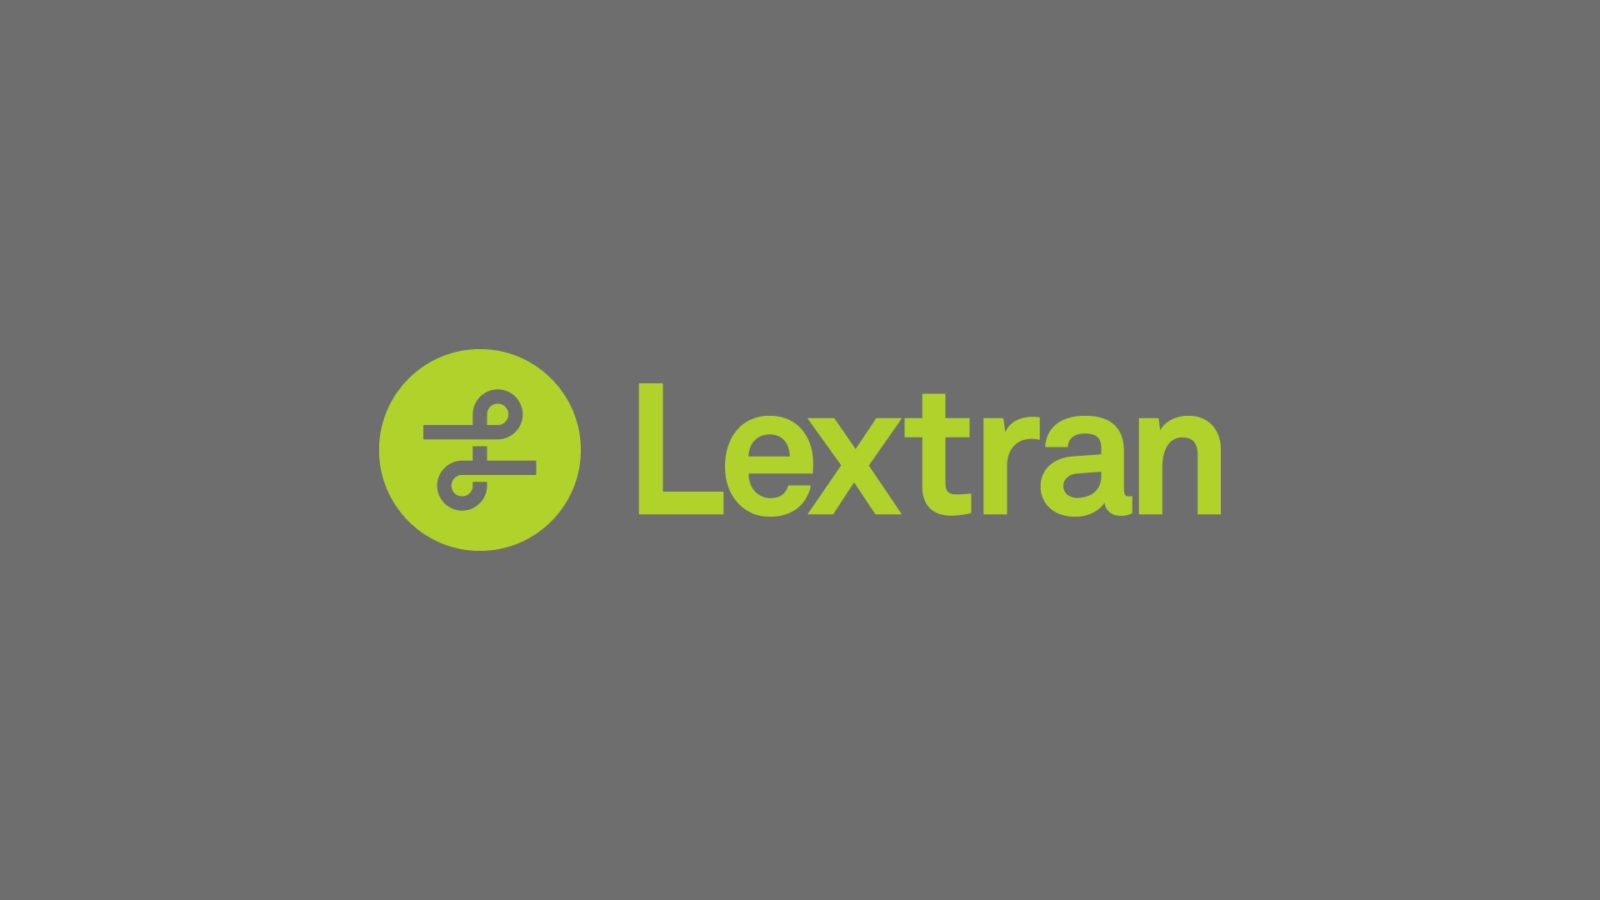 Lextran Brand Identity logo symbol